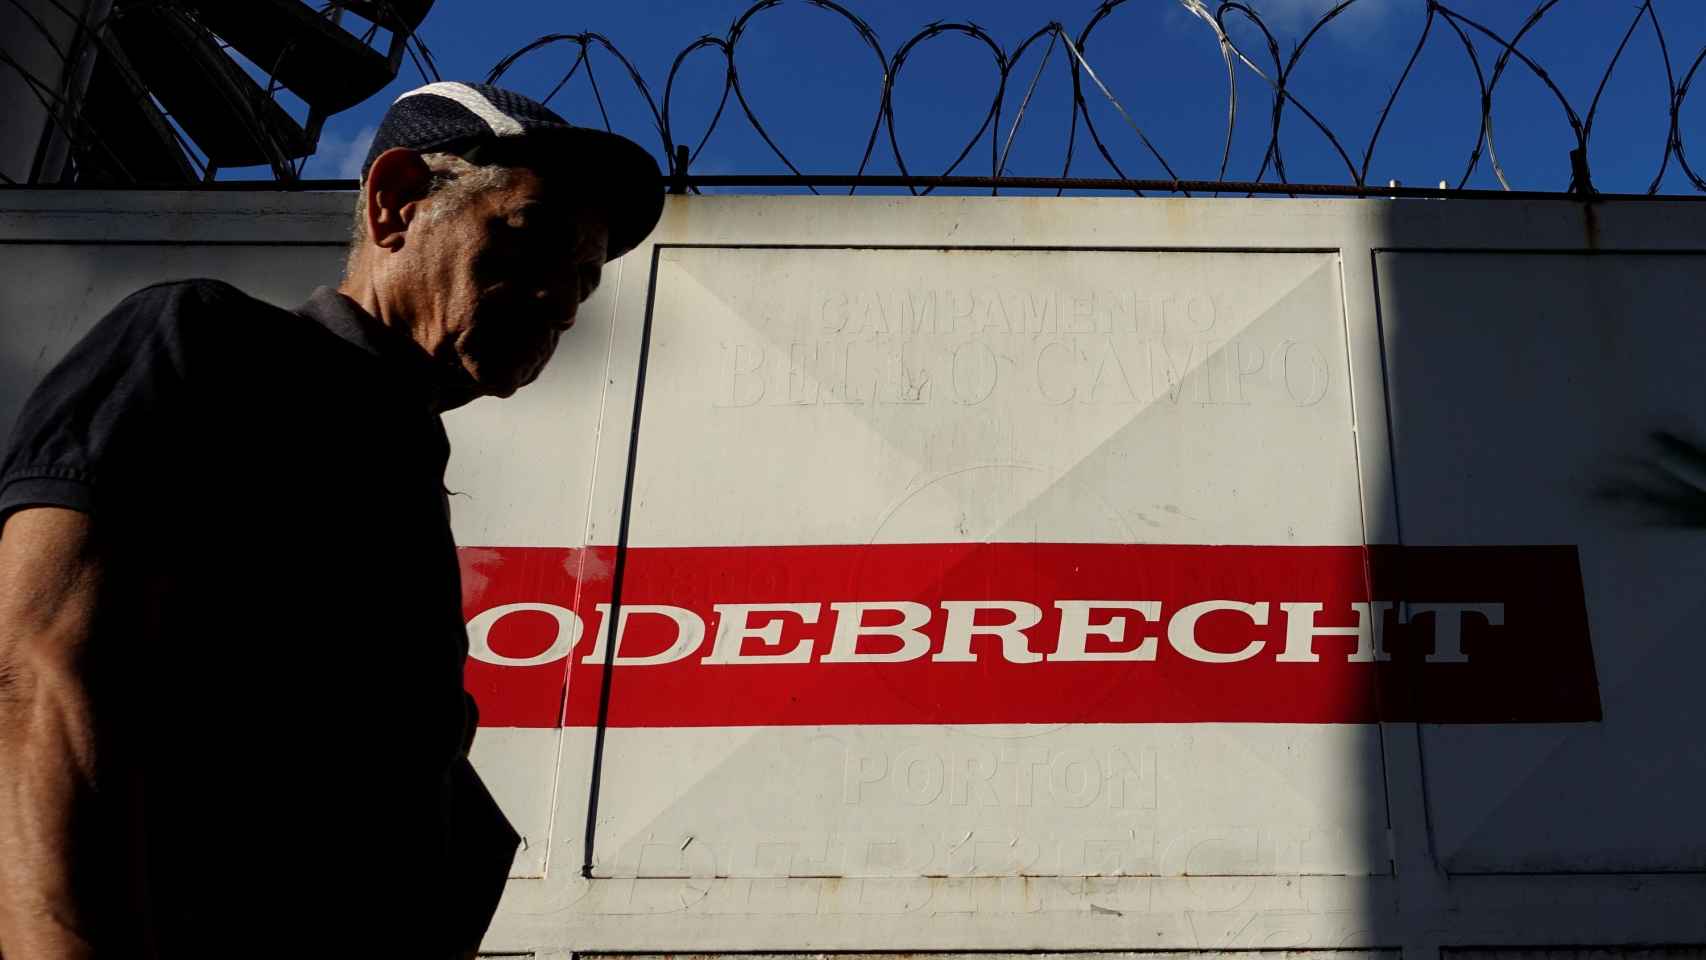 Odebrecht, ahora Novonor, un conglomerado brasileño famoso por sus casos de corrupción.